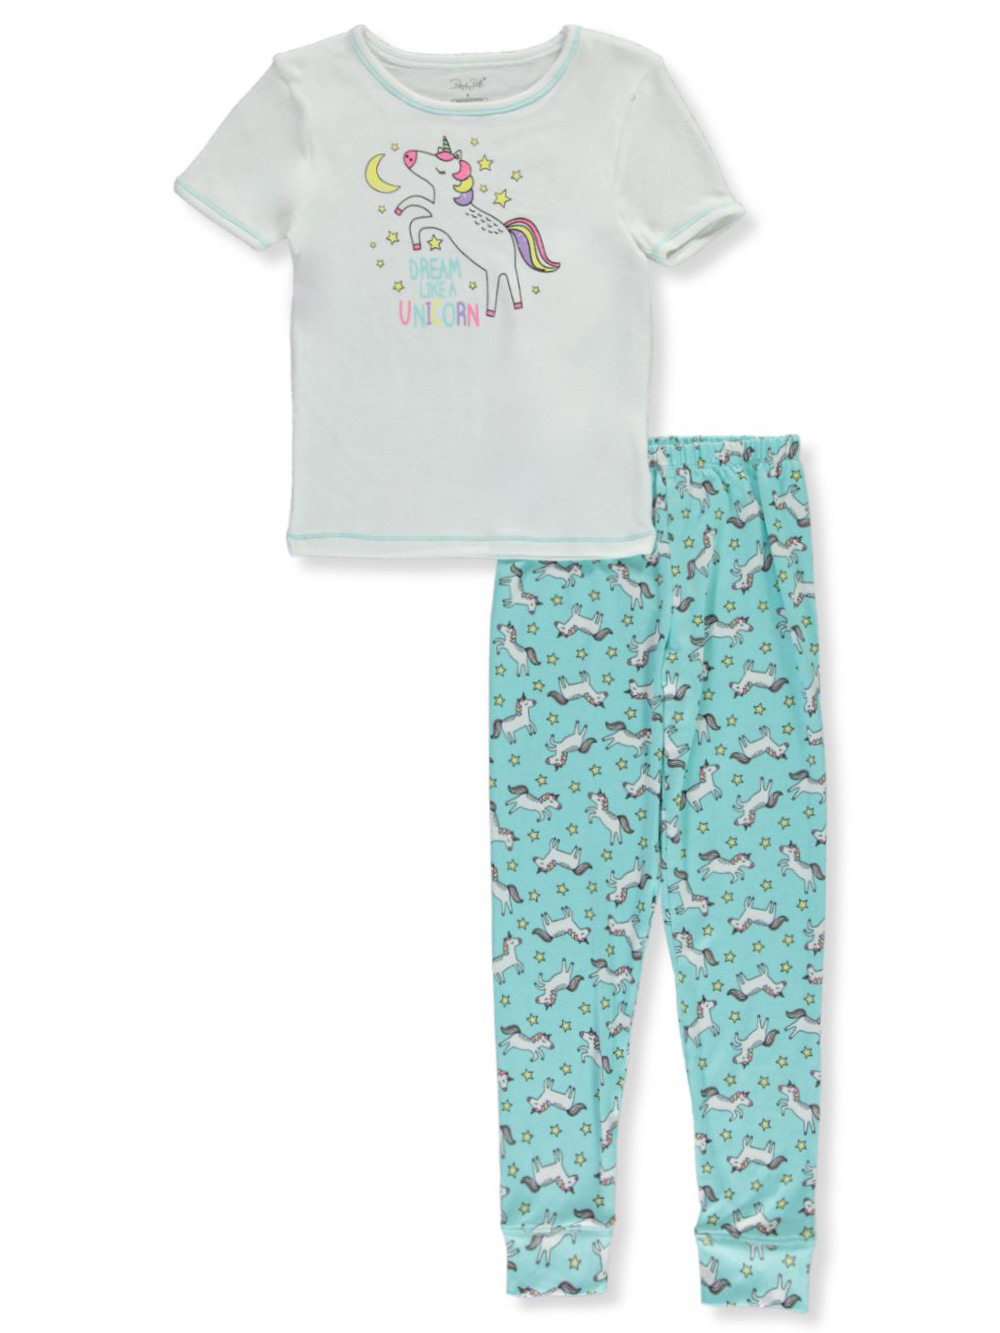 Girls' Unicorn 2-Piece Pajamas